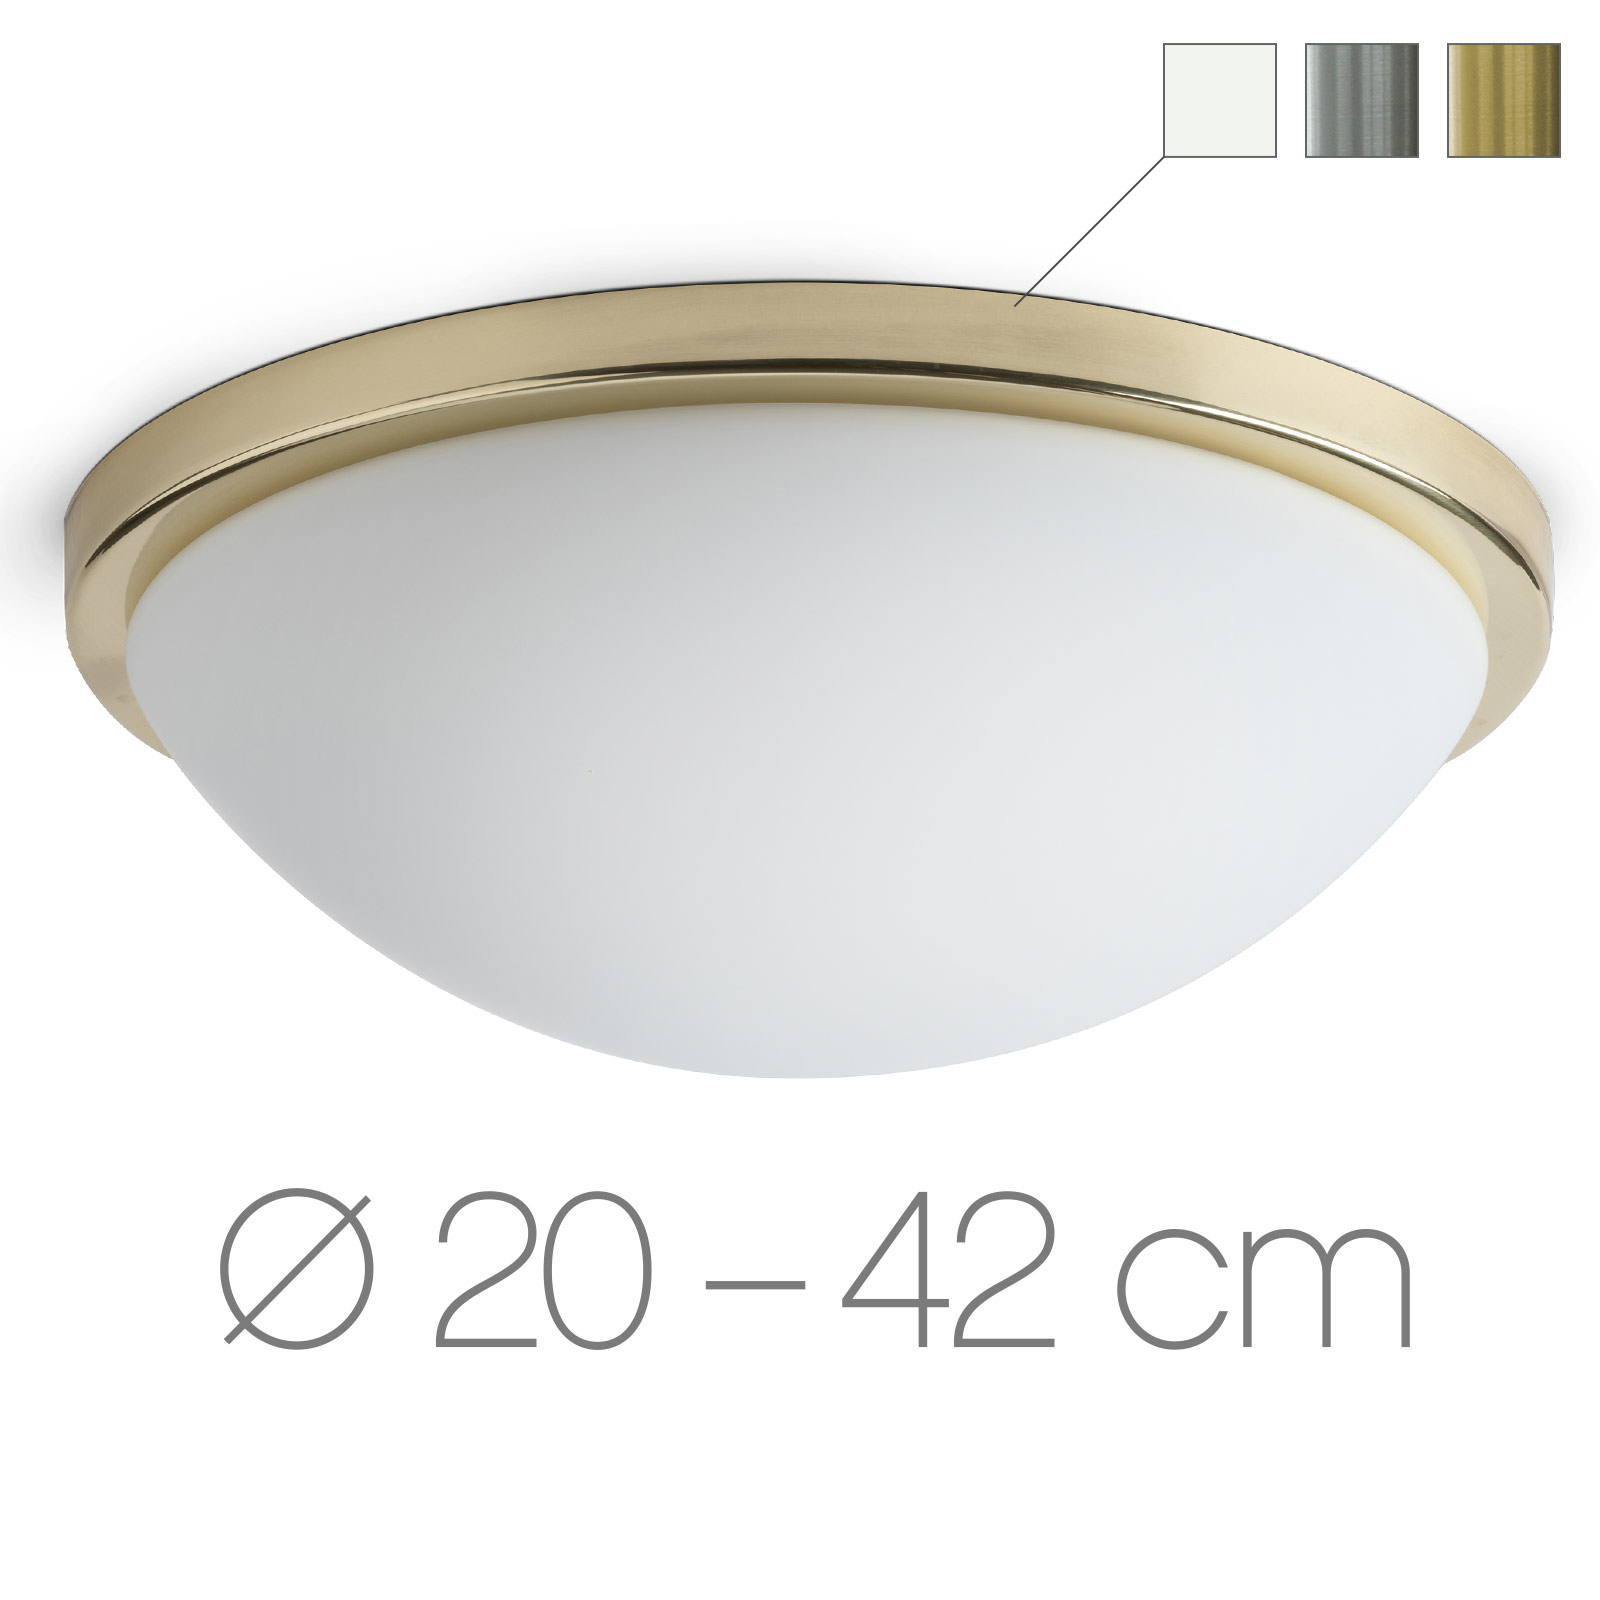 Opalglas-Deckenleuchte mit Ring AURORA R2, Ø 20 bis 42 cm: Flache, schlichte Deckenleuchten-Serie mit samtig-mattem Opalglas, hier in Ø 30 cm und Messing-Zierblende